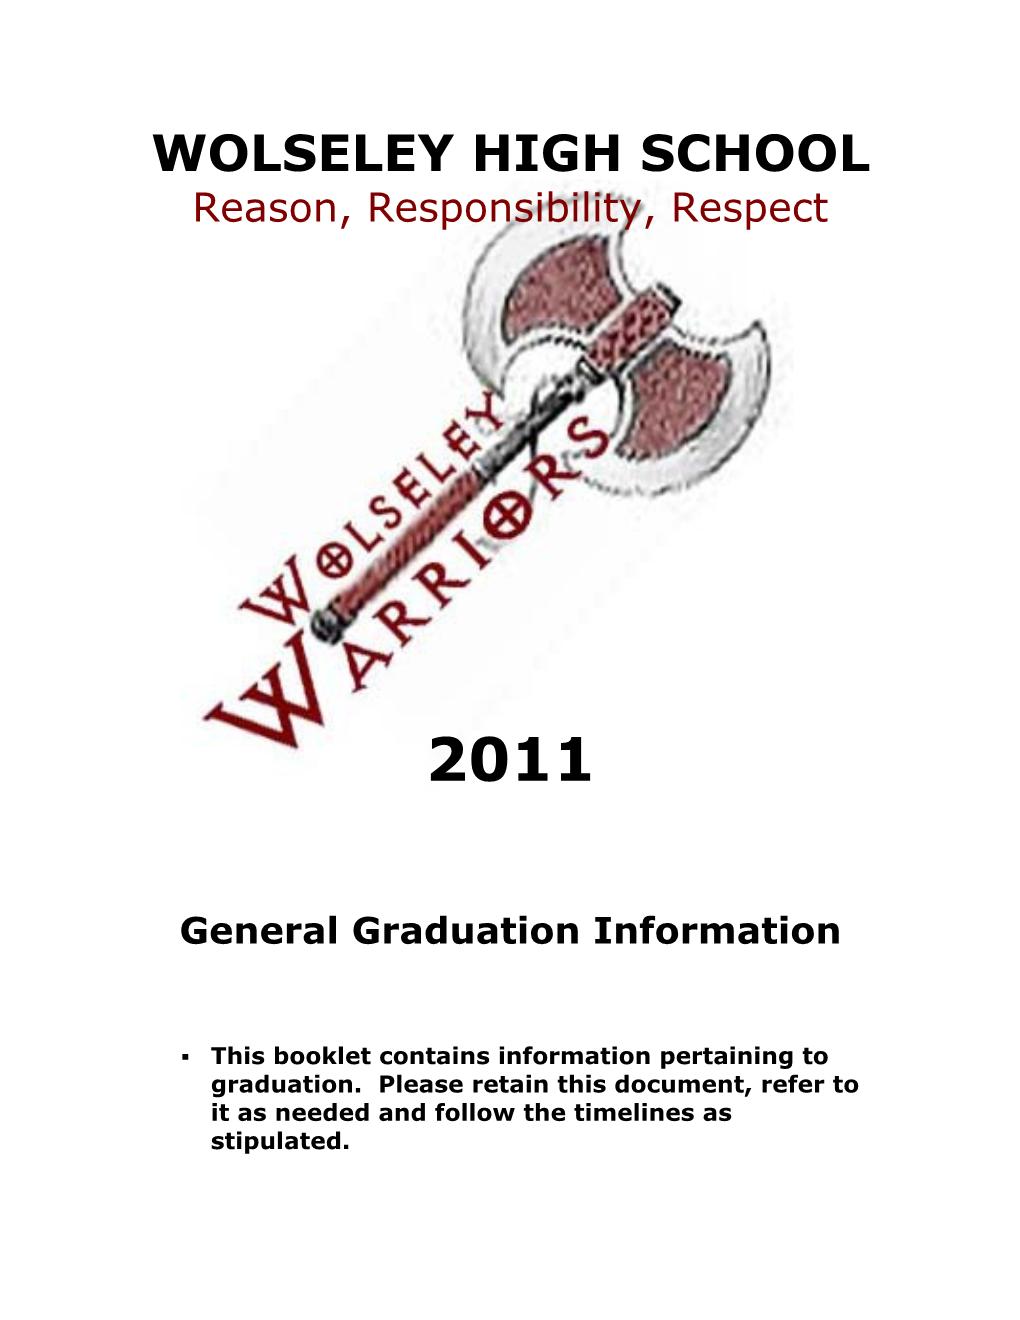 Wolseley High School